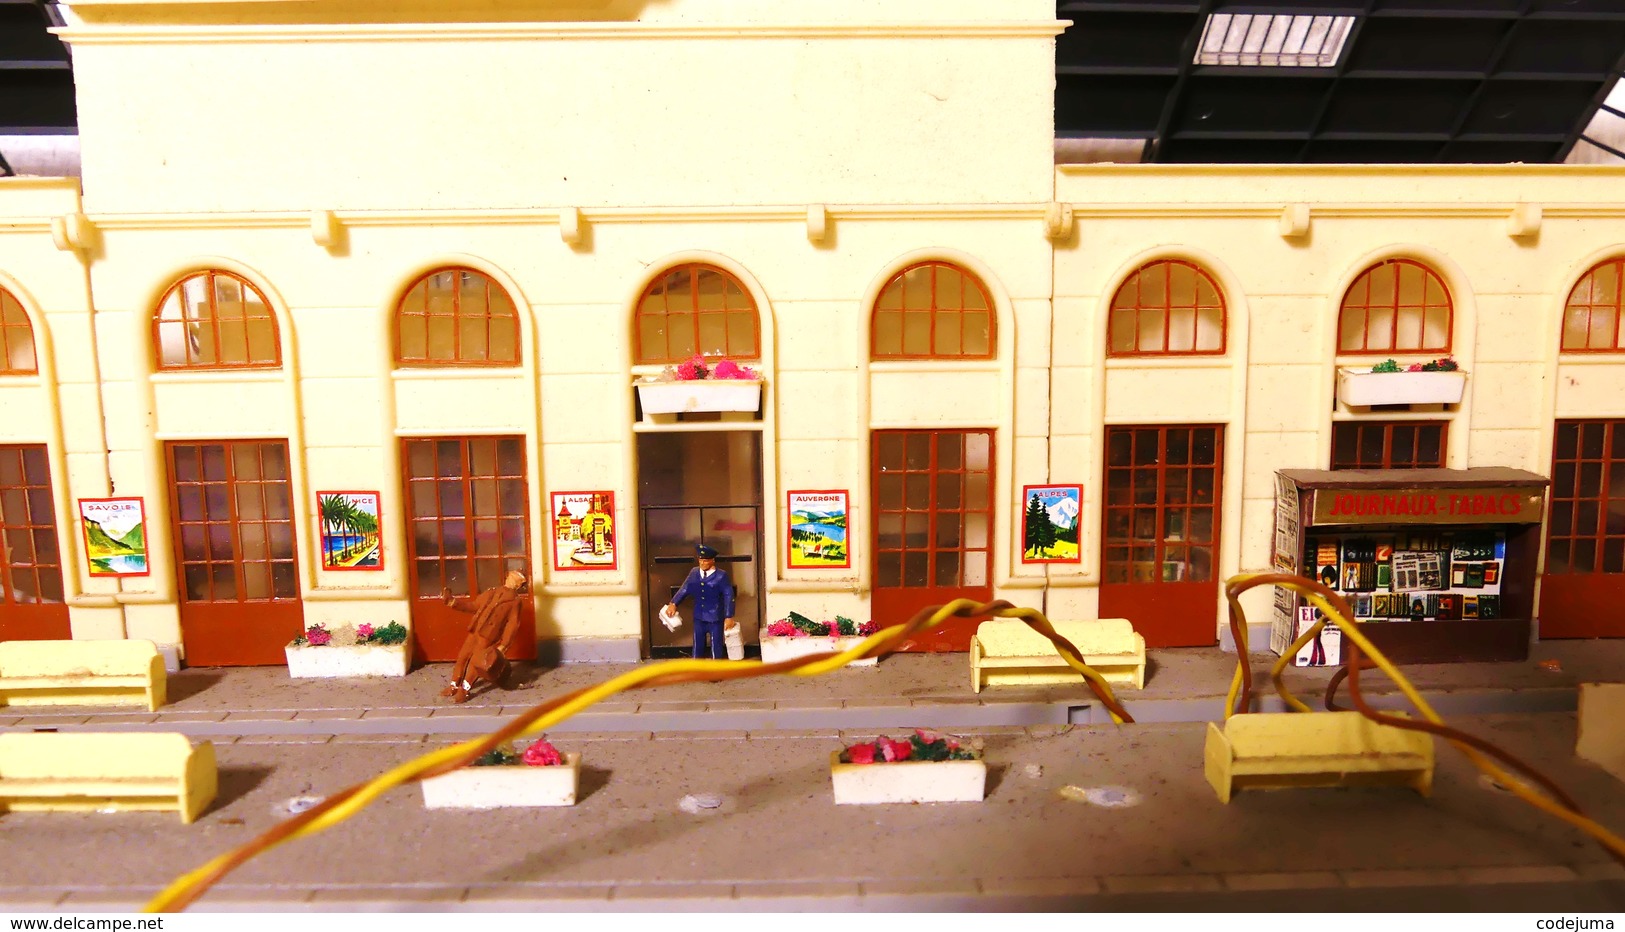 Gare pour train miniature jouef